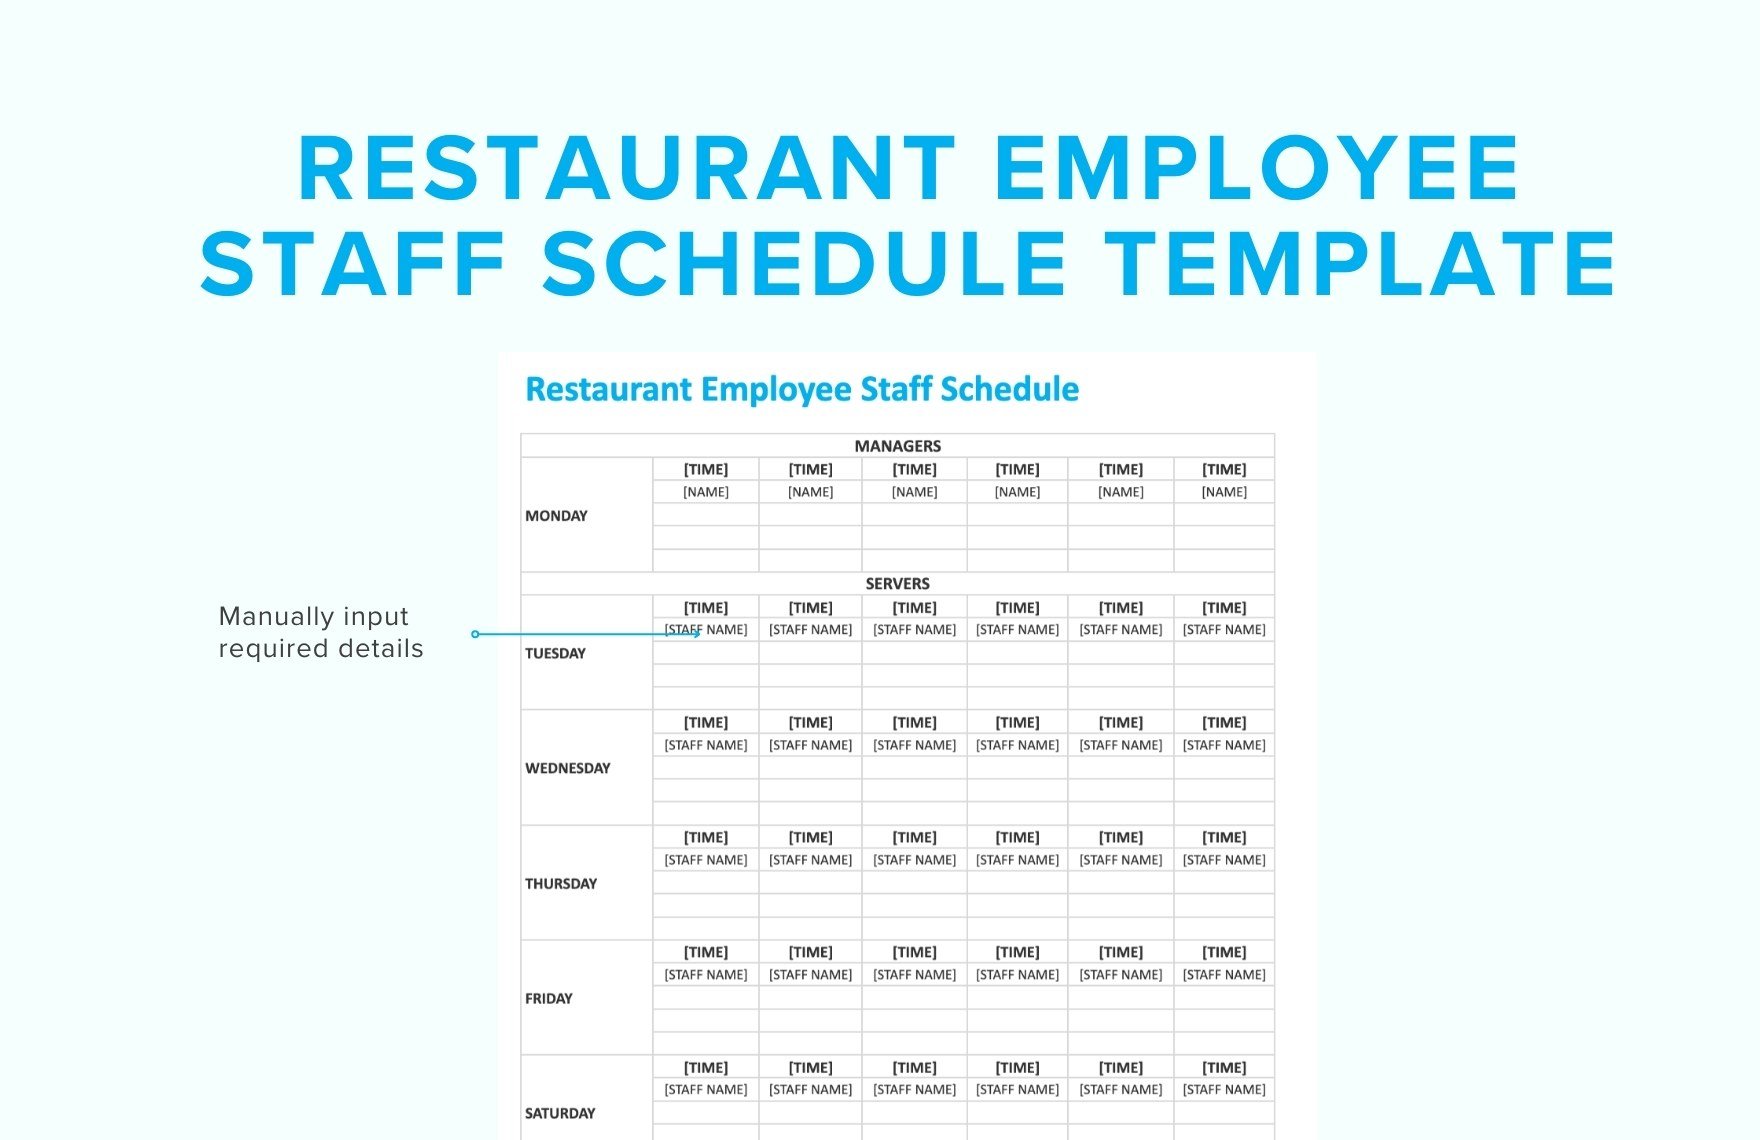 Restaurant Employee Staff Schedule Template